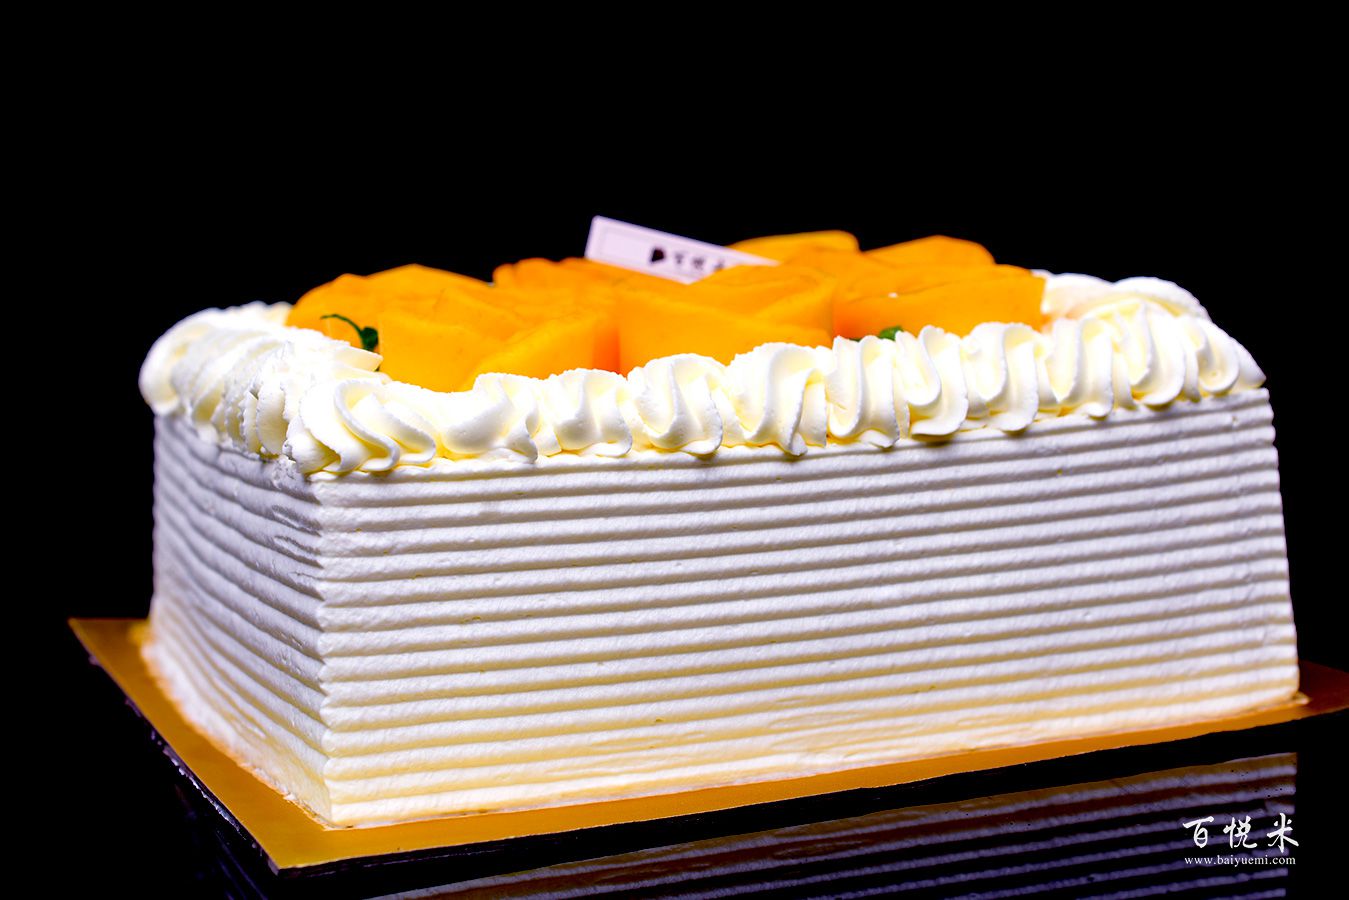 芒果蛋糕高清图片大全【蛋糕图片】_63